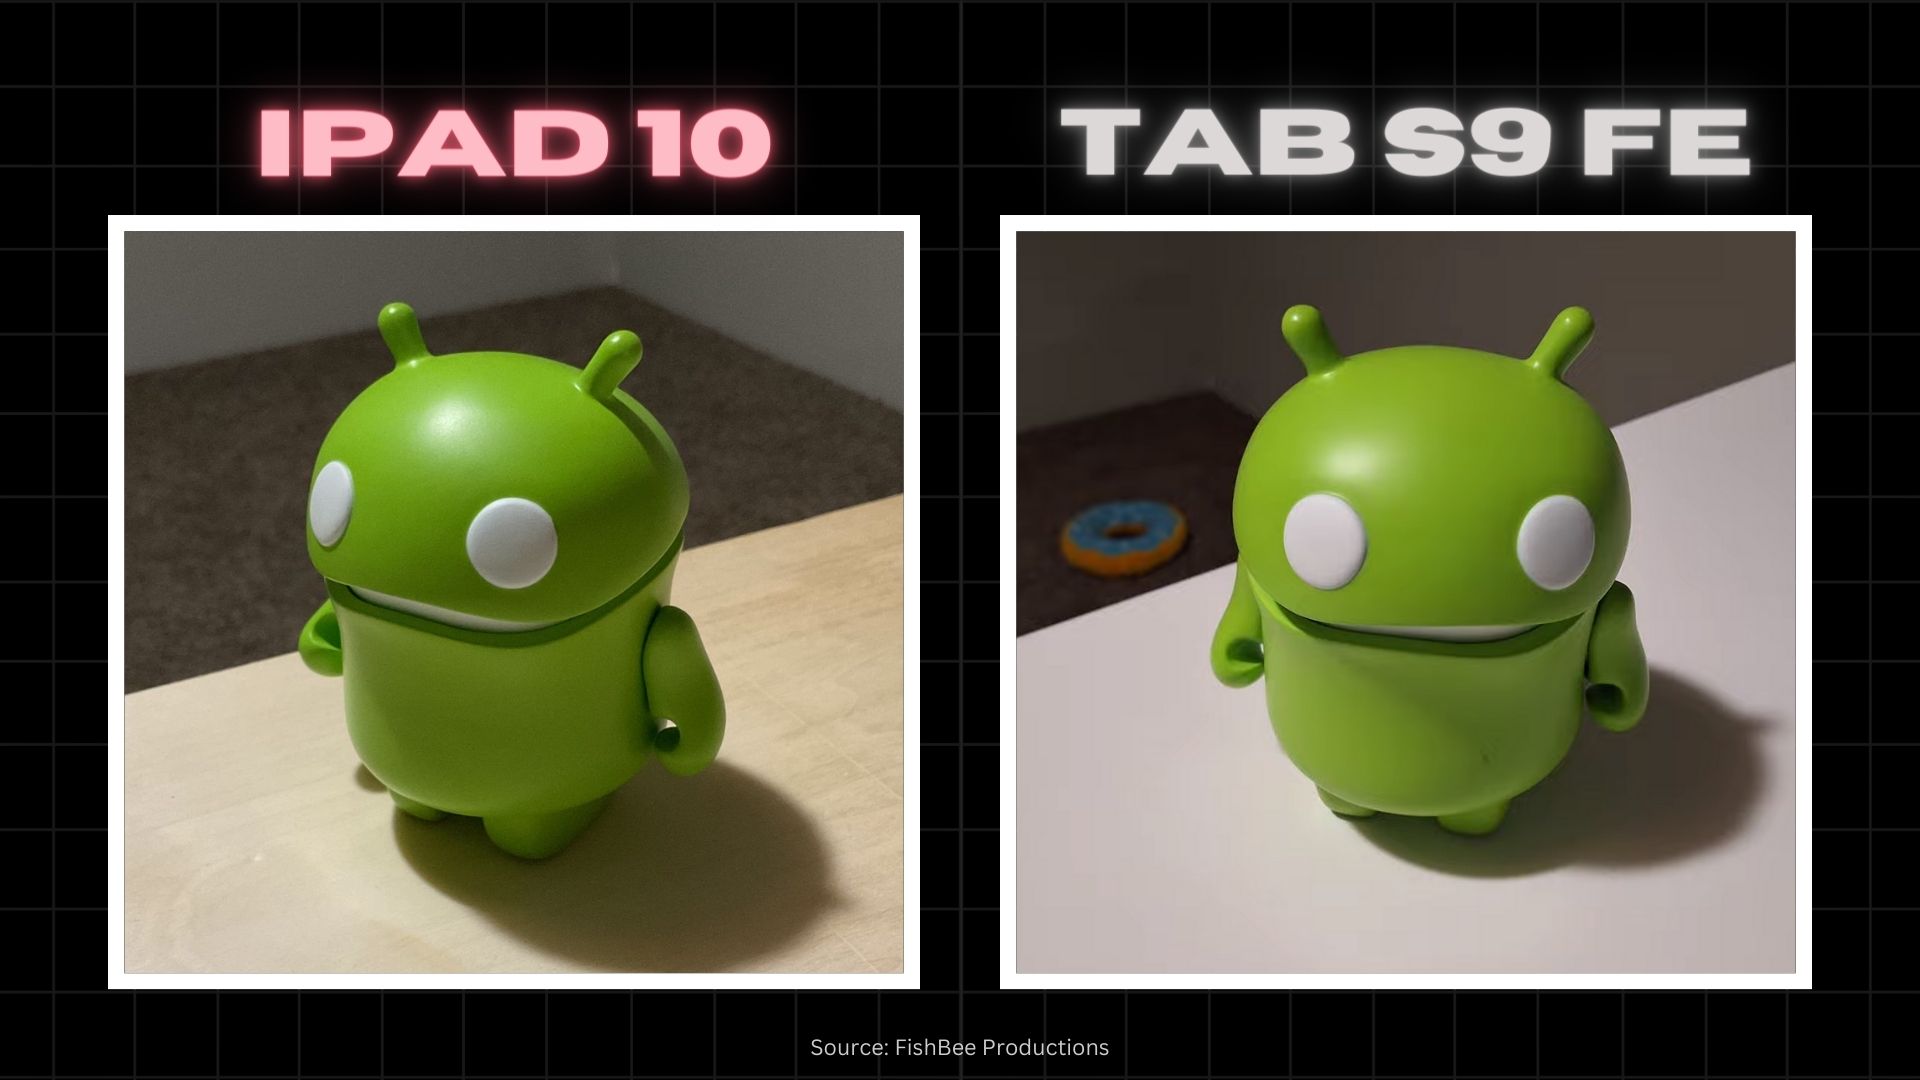 iPad 10 vs Tab S9 FE Camera